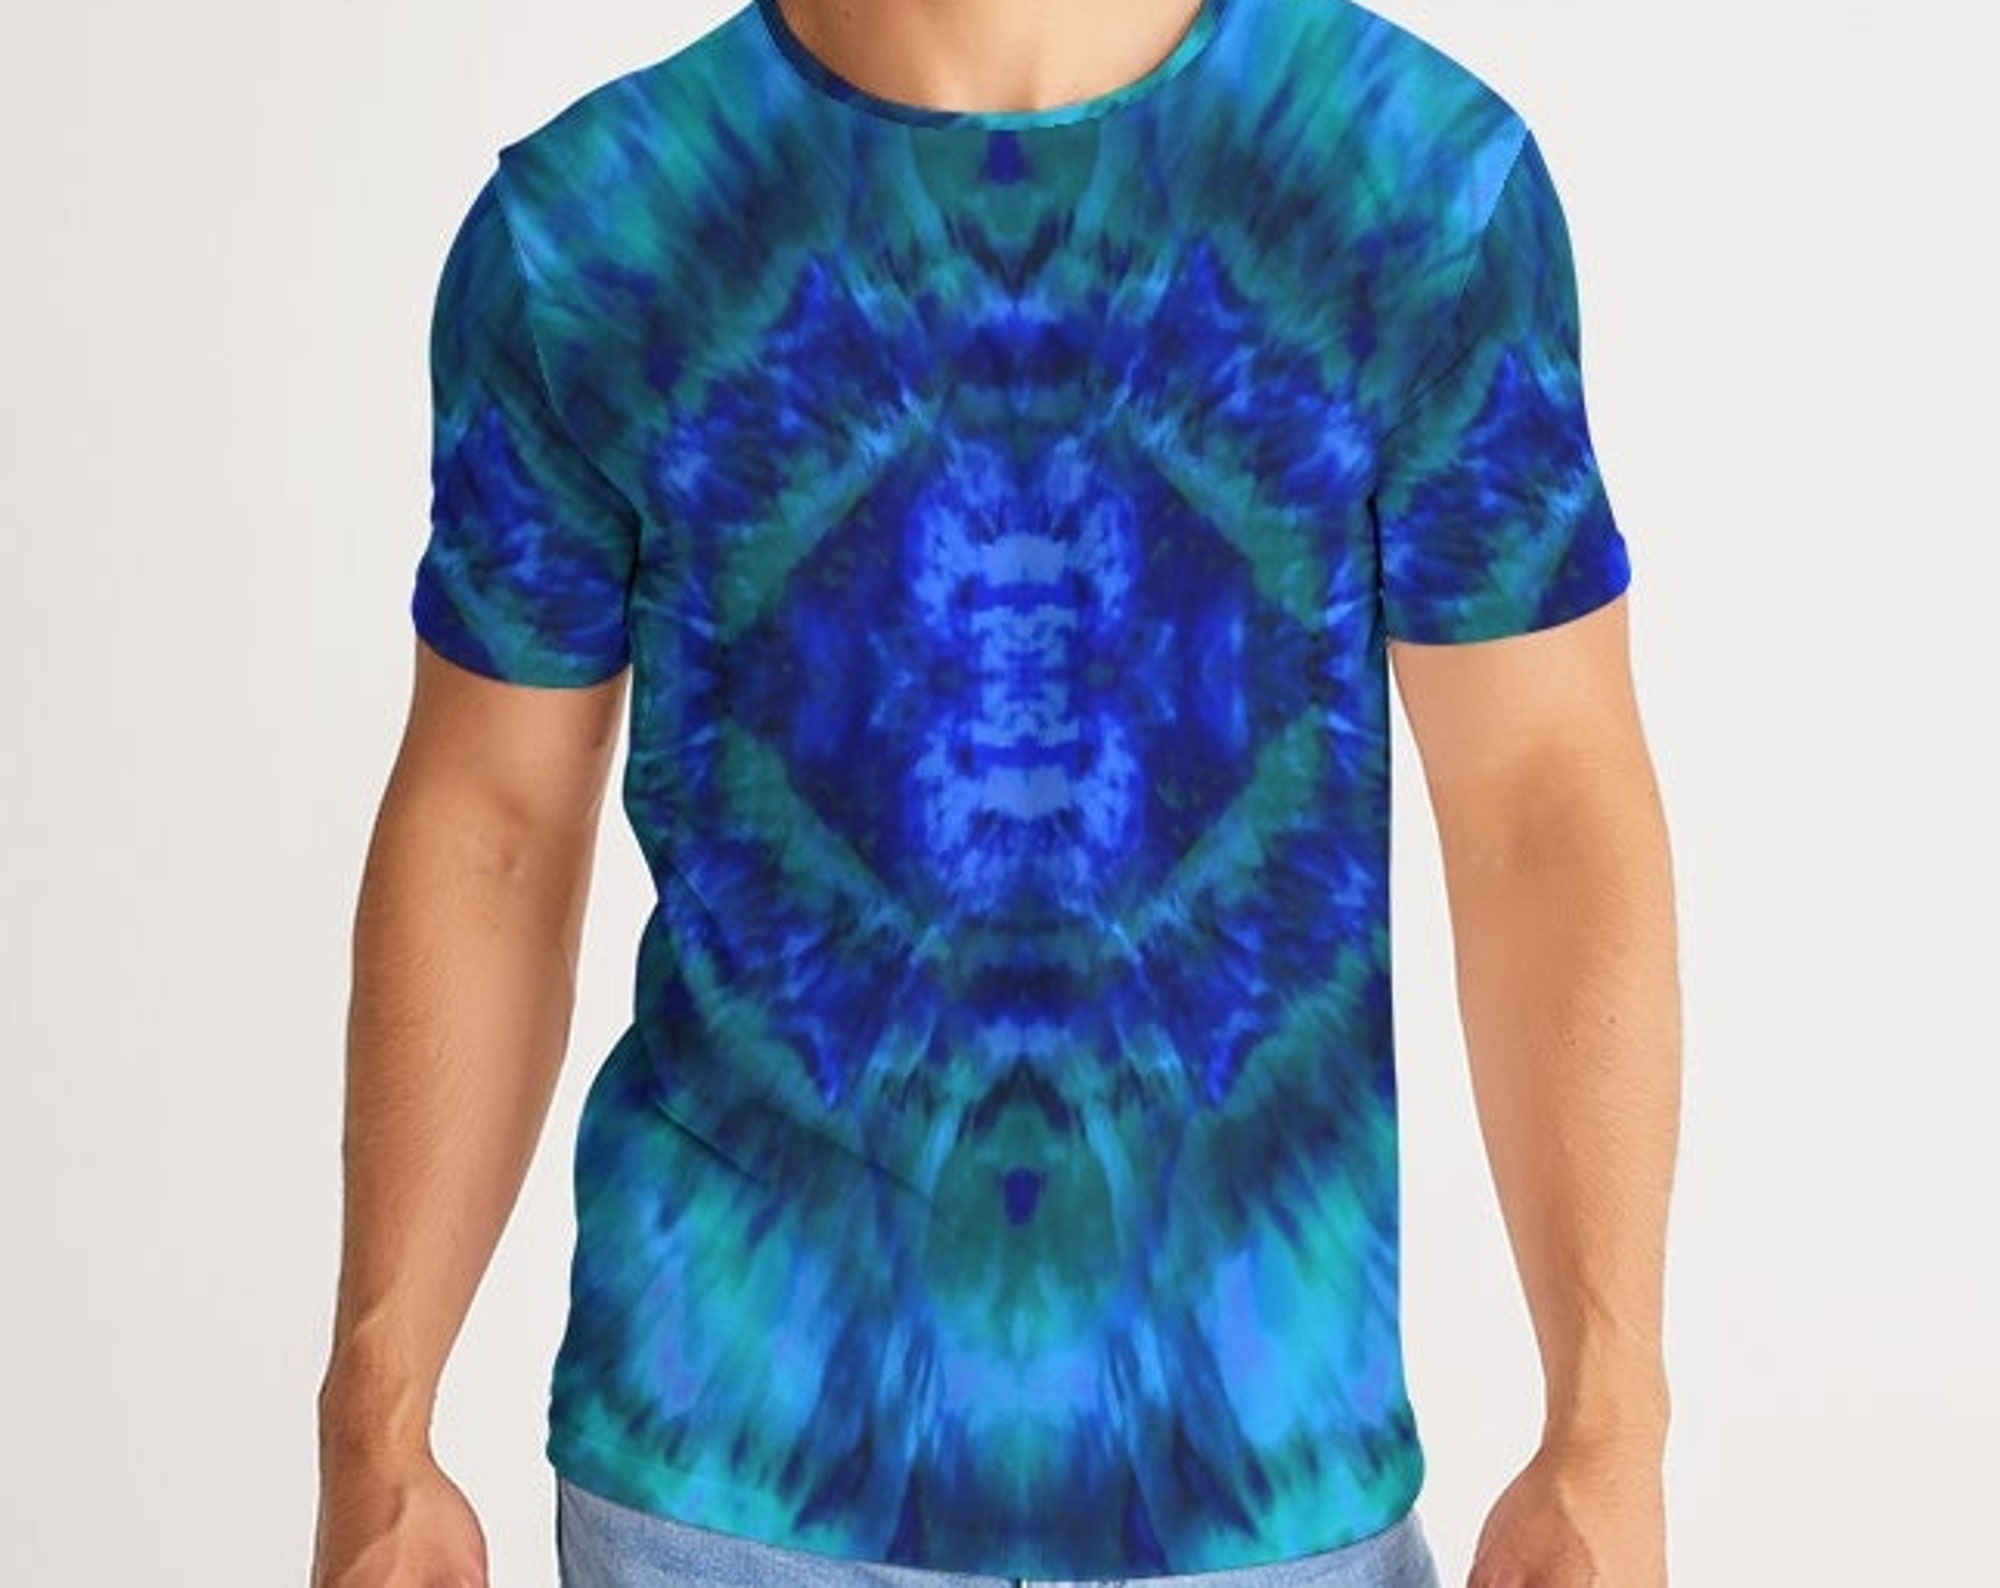 Discover Psychedelic Hippie Shibori Tye Dye 3D T Shirt